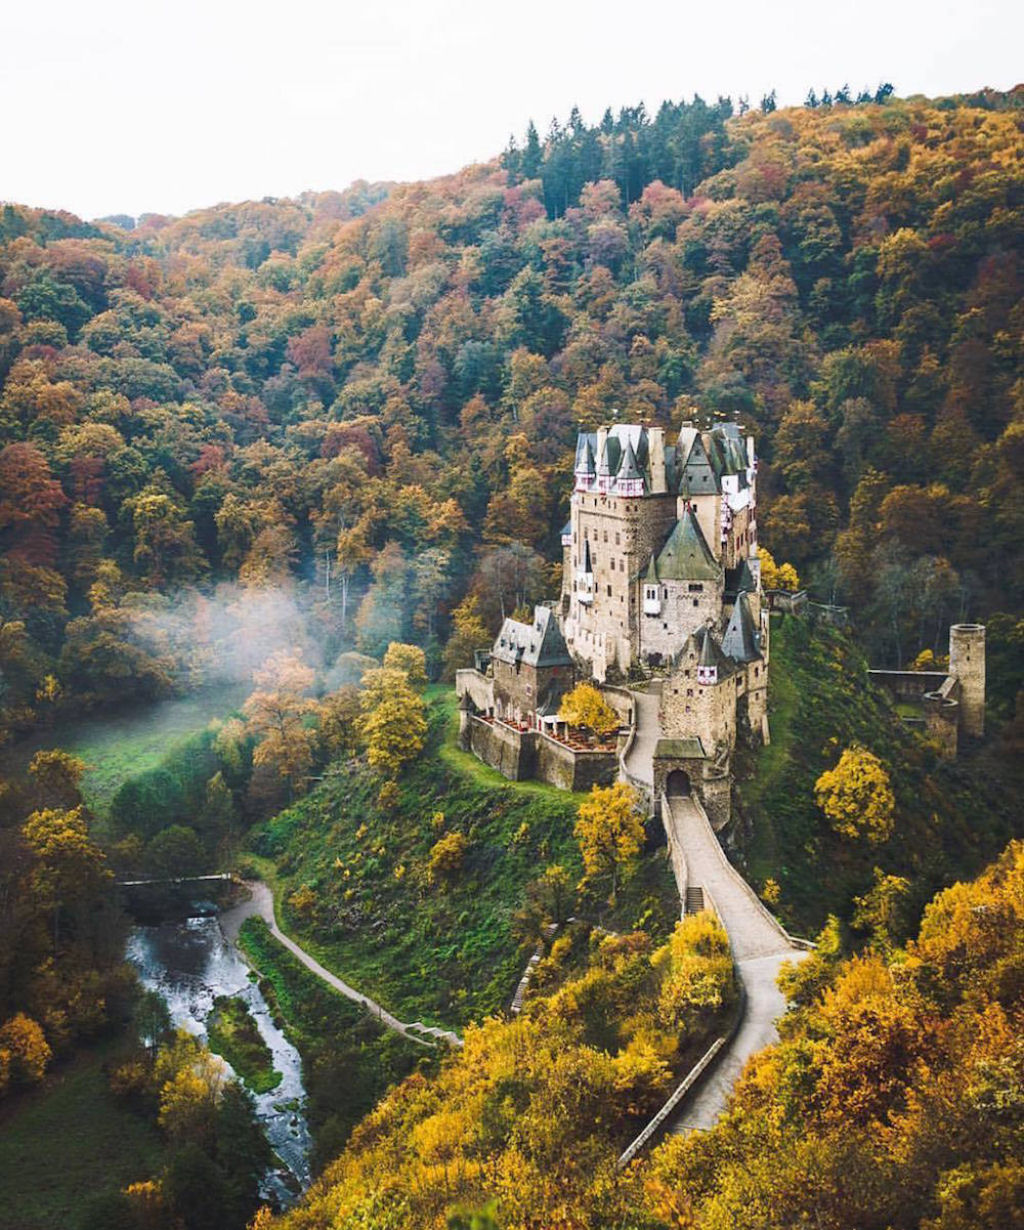 O castelo de Eltz, ena Alemanha, foi construdo no sculo XII. Resistiu a passagem do tempo at nossos dias.